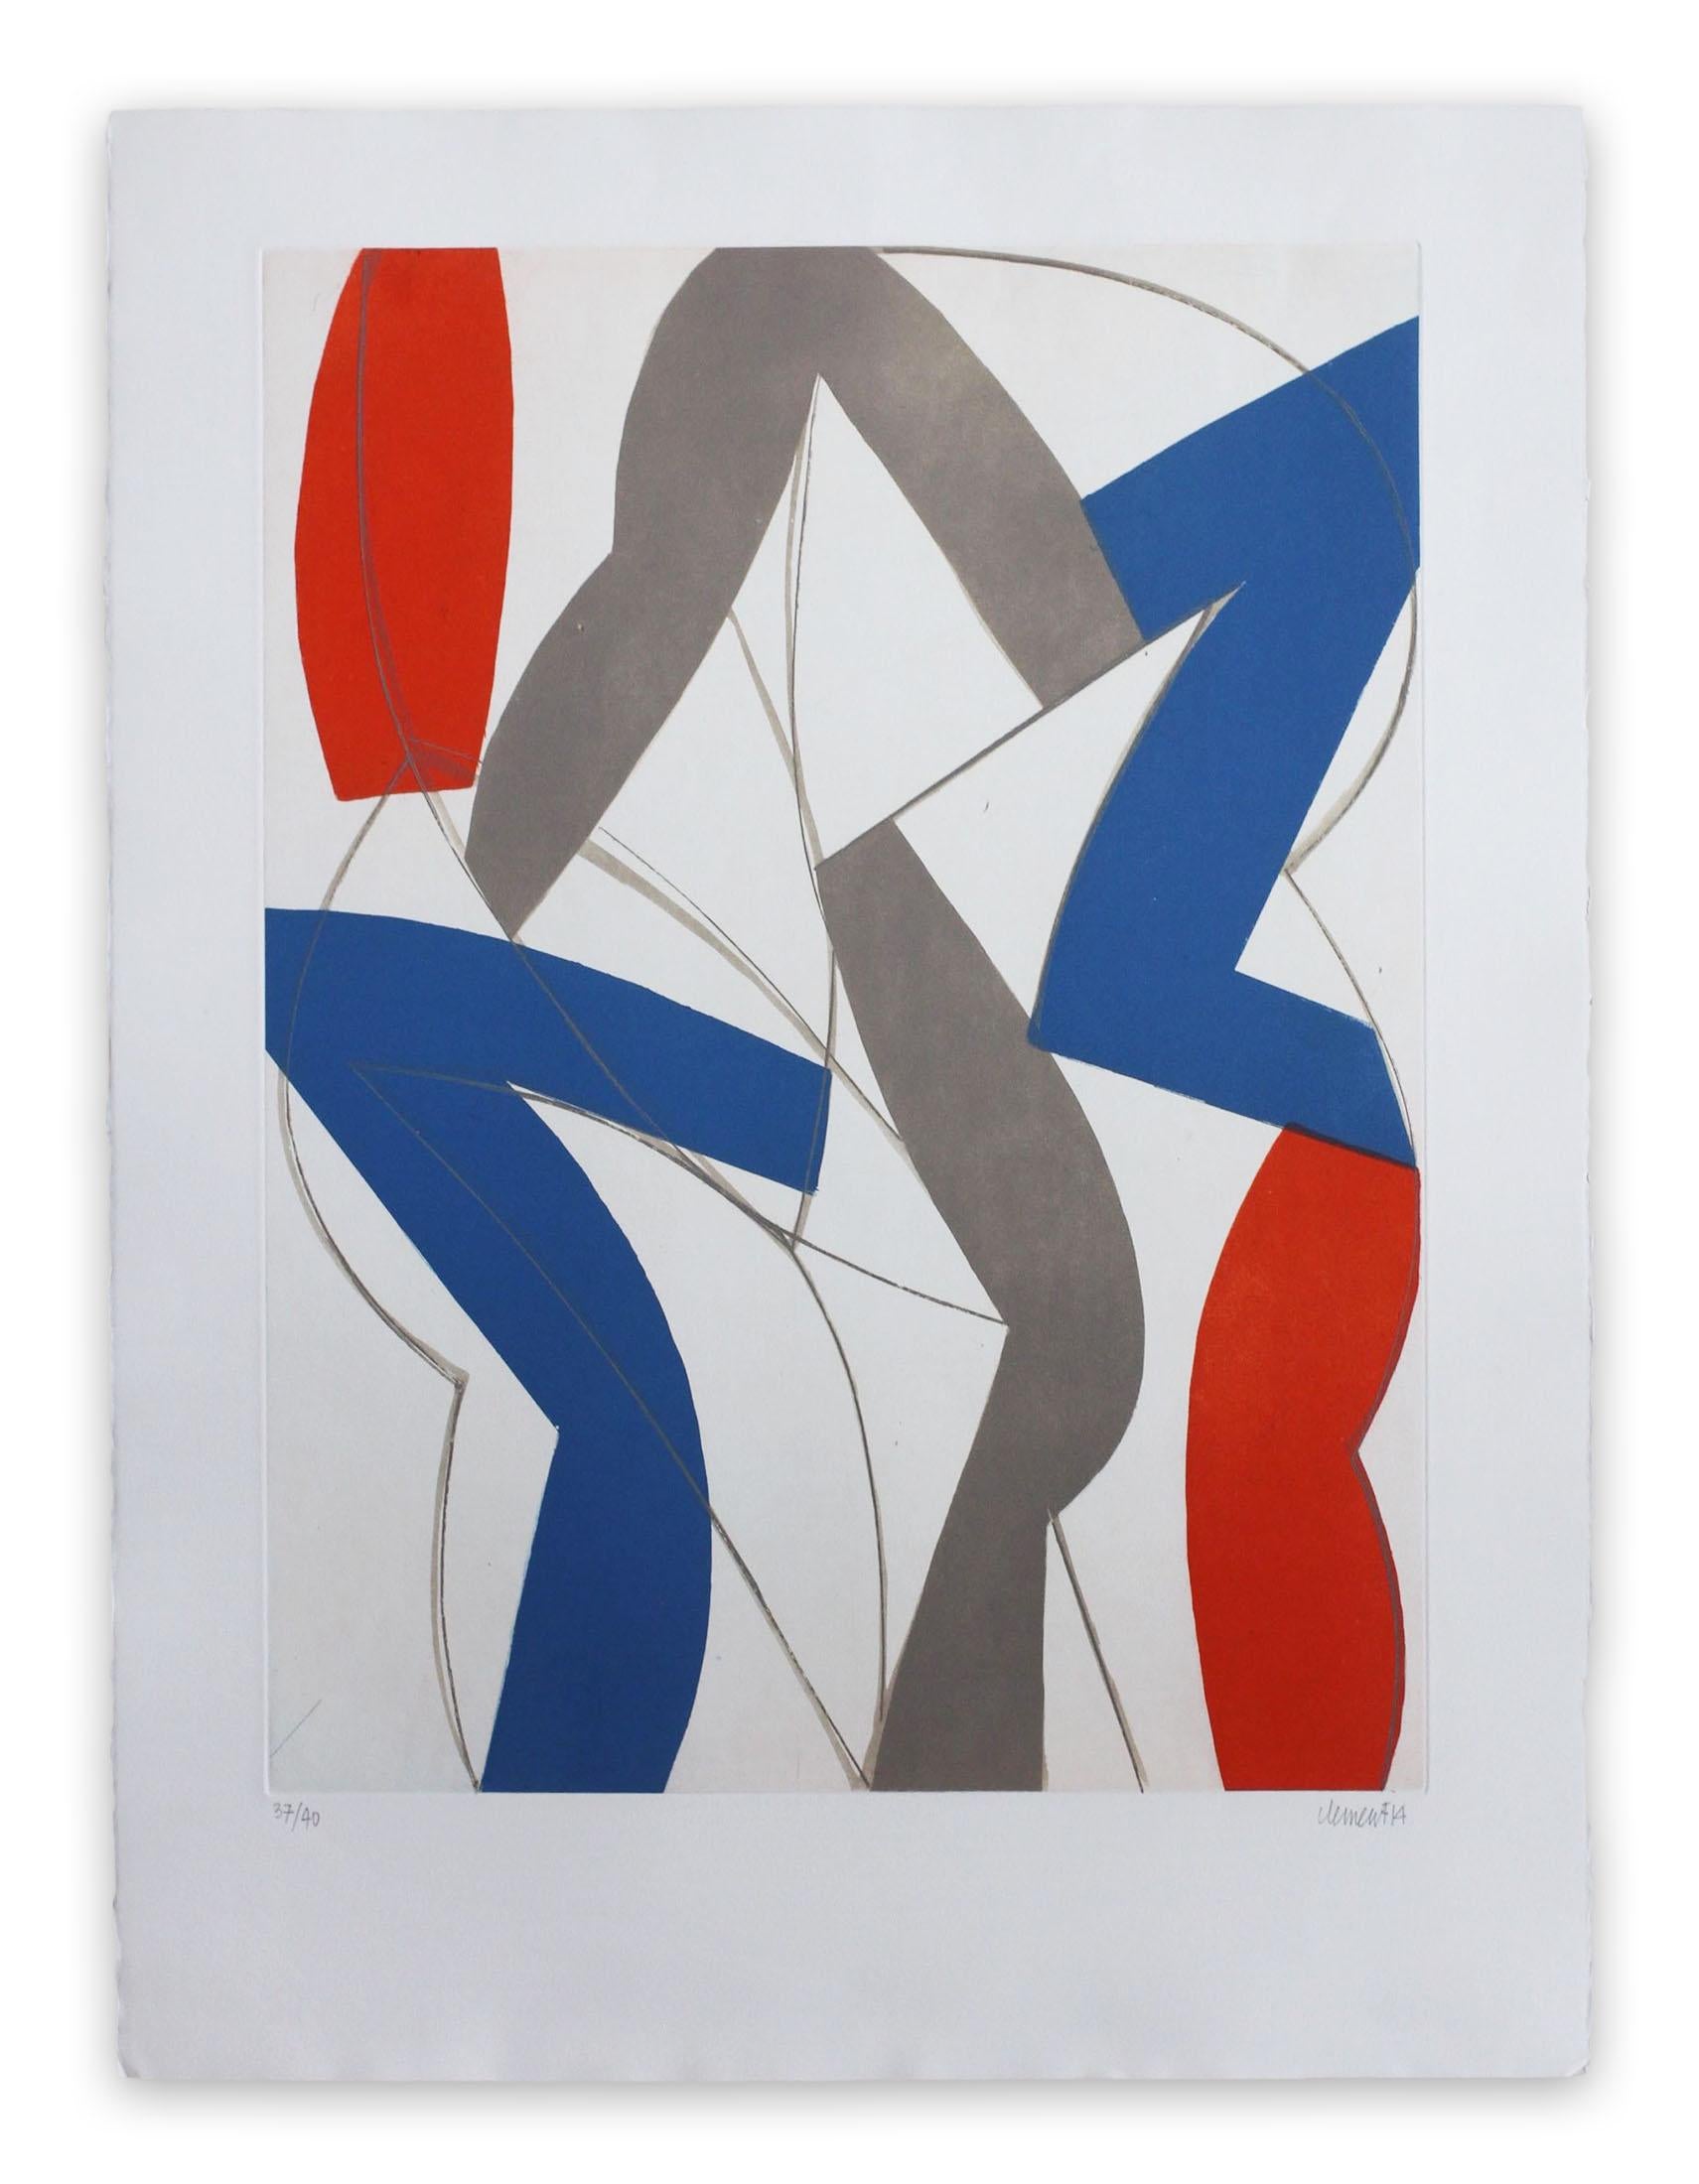 Abstract Print Alain Clément - 14AV11G-2014 (impression abstraite)